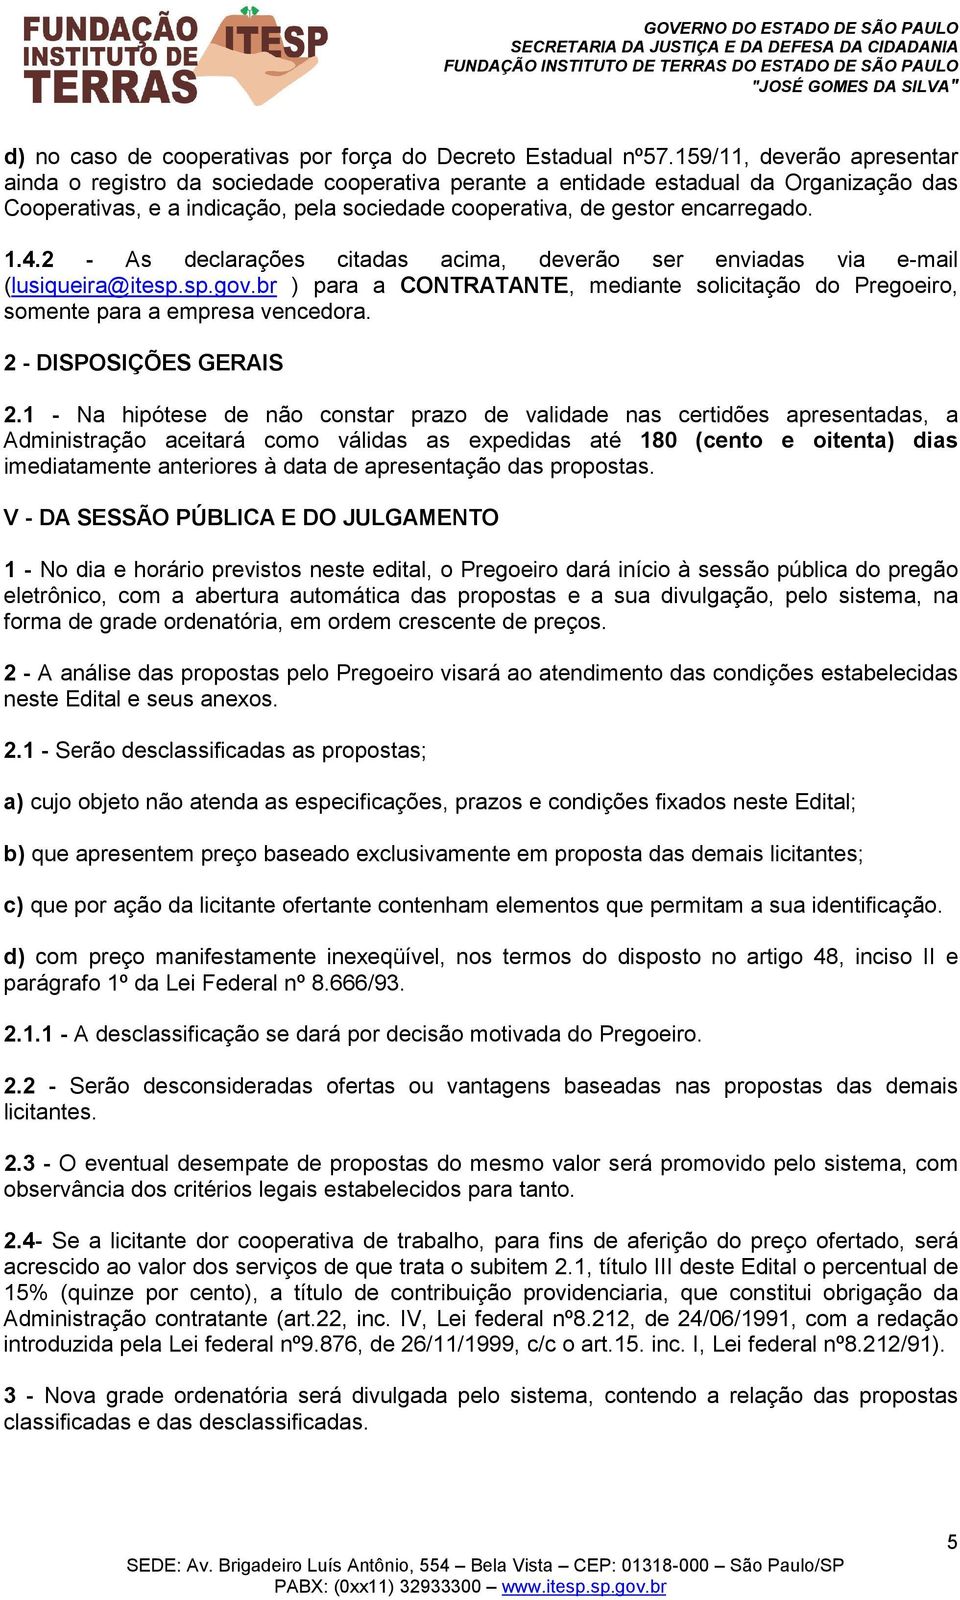 2 - As declarações citadas acima, deverão ser enviadas via e-mail (lusiqueira@itesp.sp.gov.br ) para a CONTRATANTE, mediante solicitação do Pregoeiro, somente para a empresa vencedora.